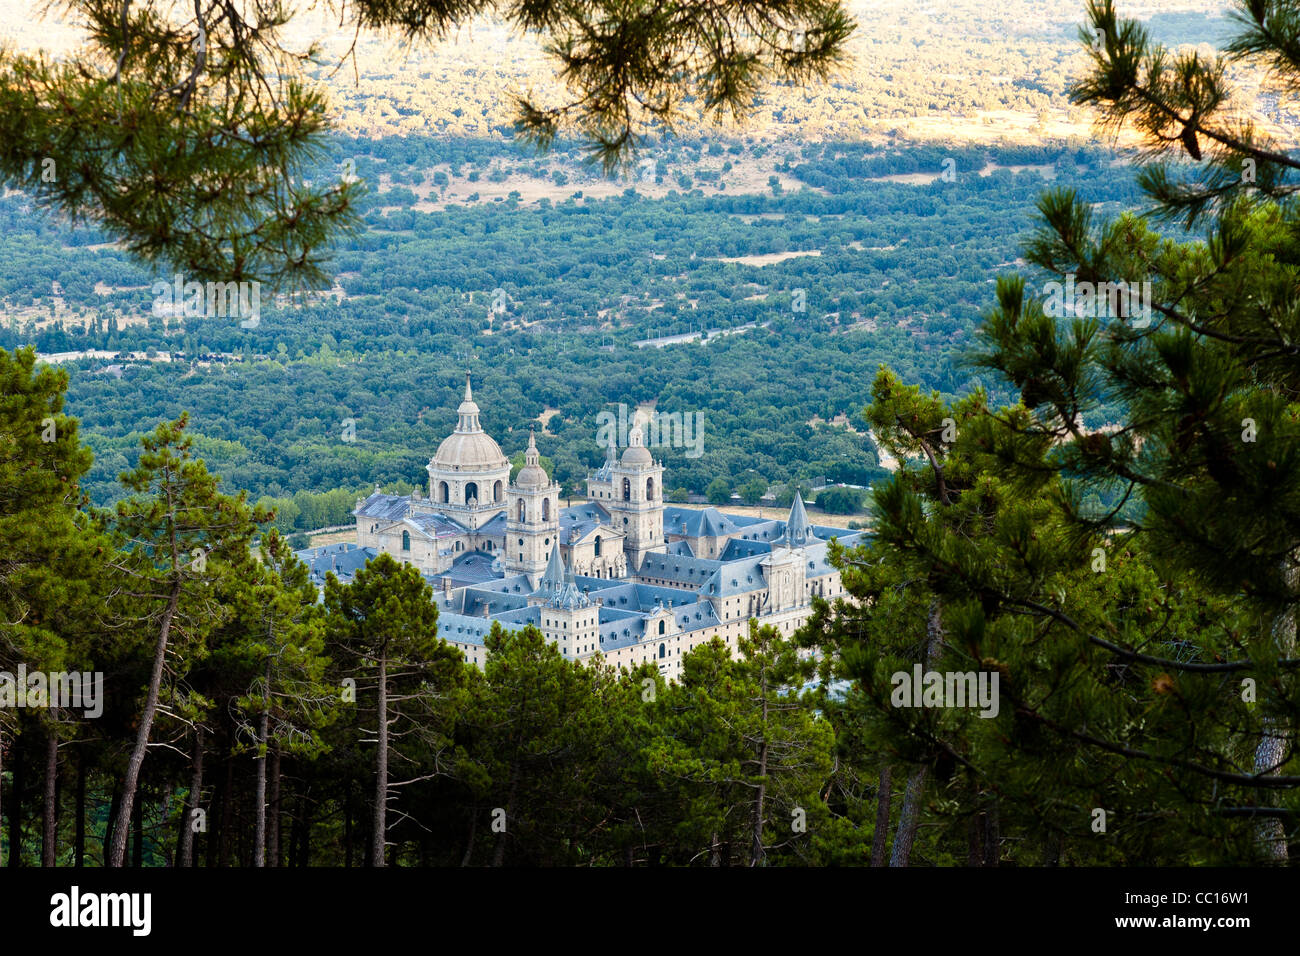 View of the San Lorenzo de El Escorial Monastery Complex from Miradores outlook. Stock Photo